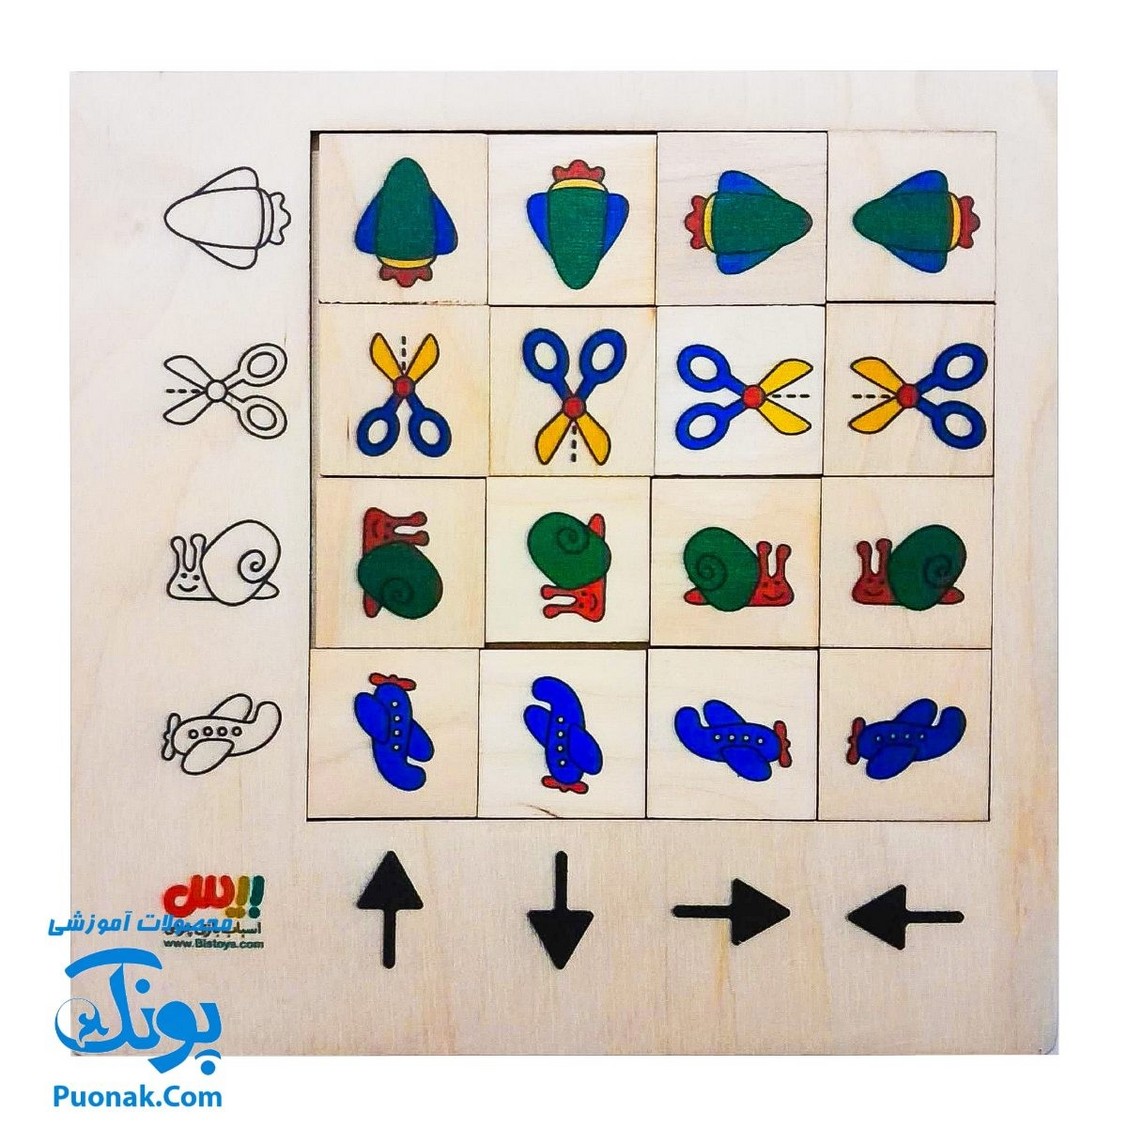 جورچین چوبی آموزش مفاهیم رنگ ها و شکل ها چپ و راست، بالا و پایین جهت ها به کودکان مدل بیس (۱۶ قطعه ۲۱*۲۱ cm)